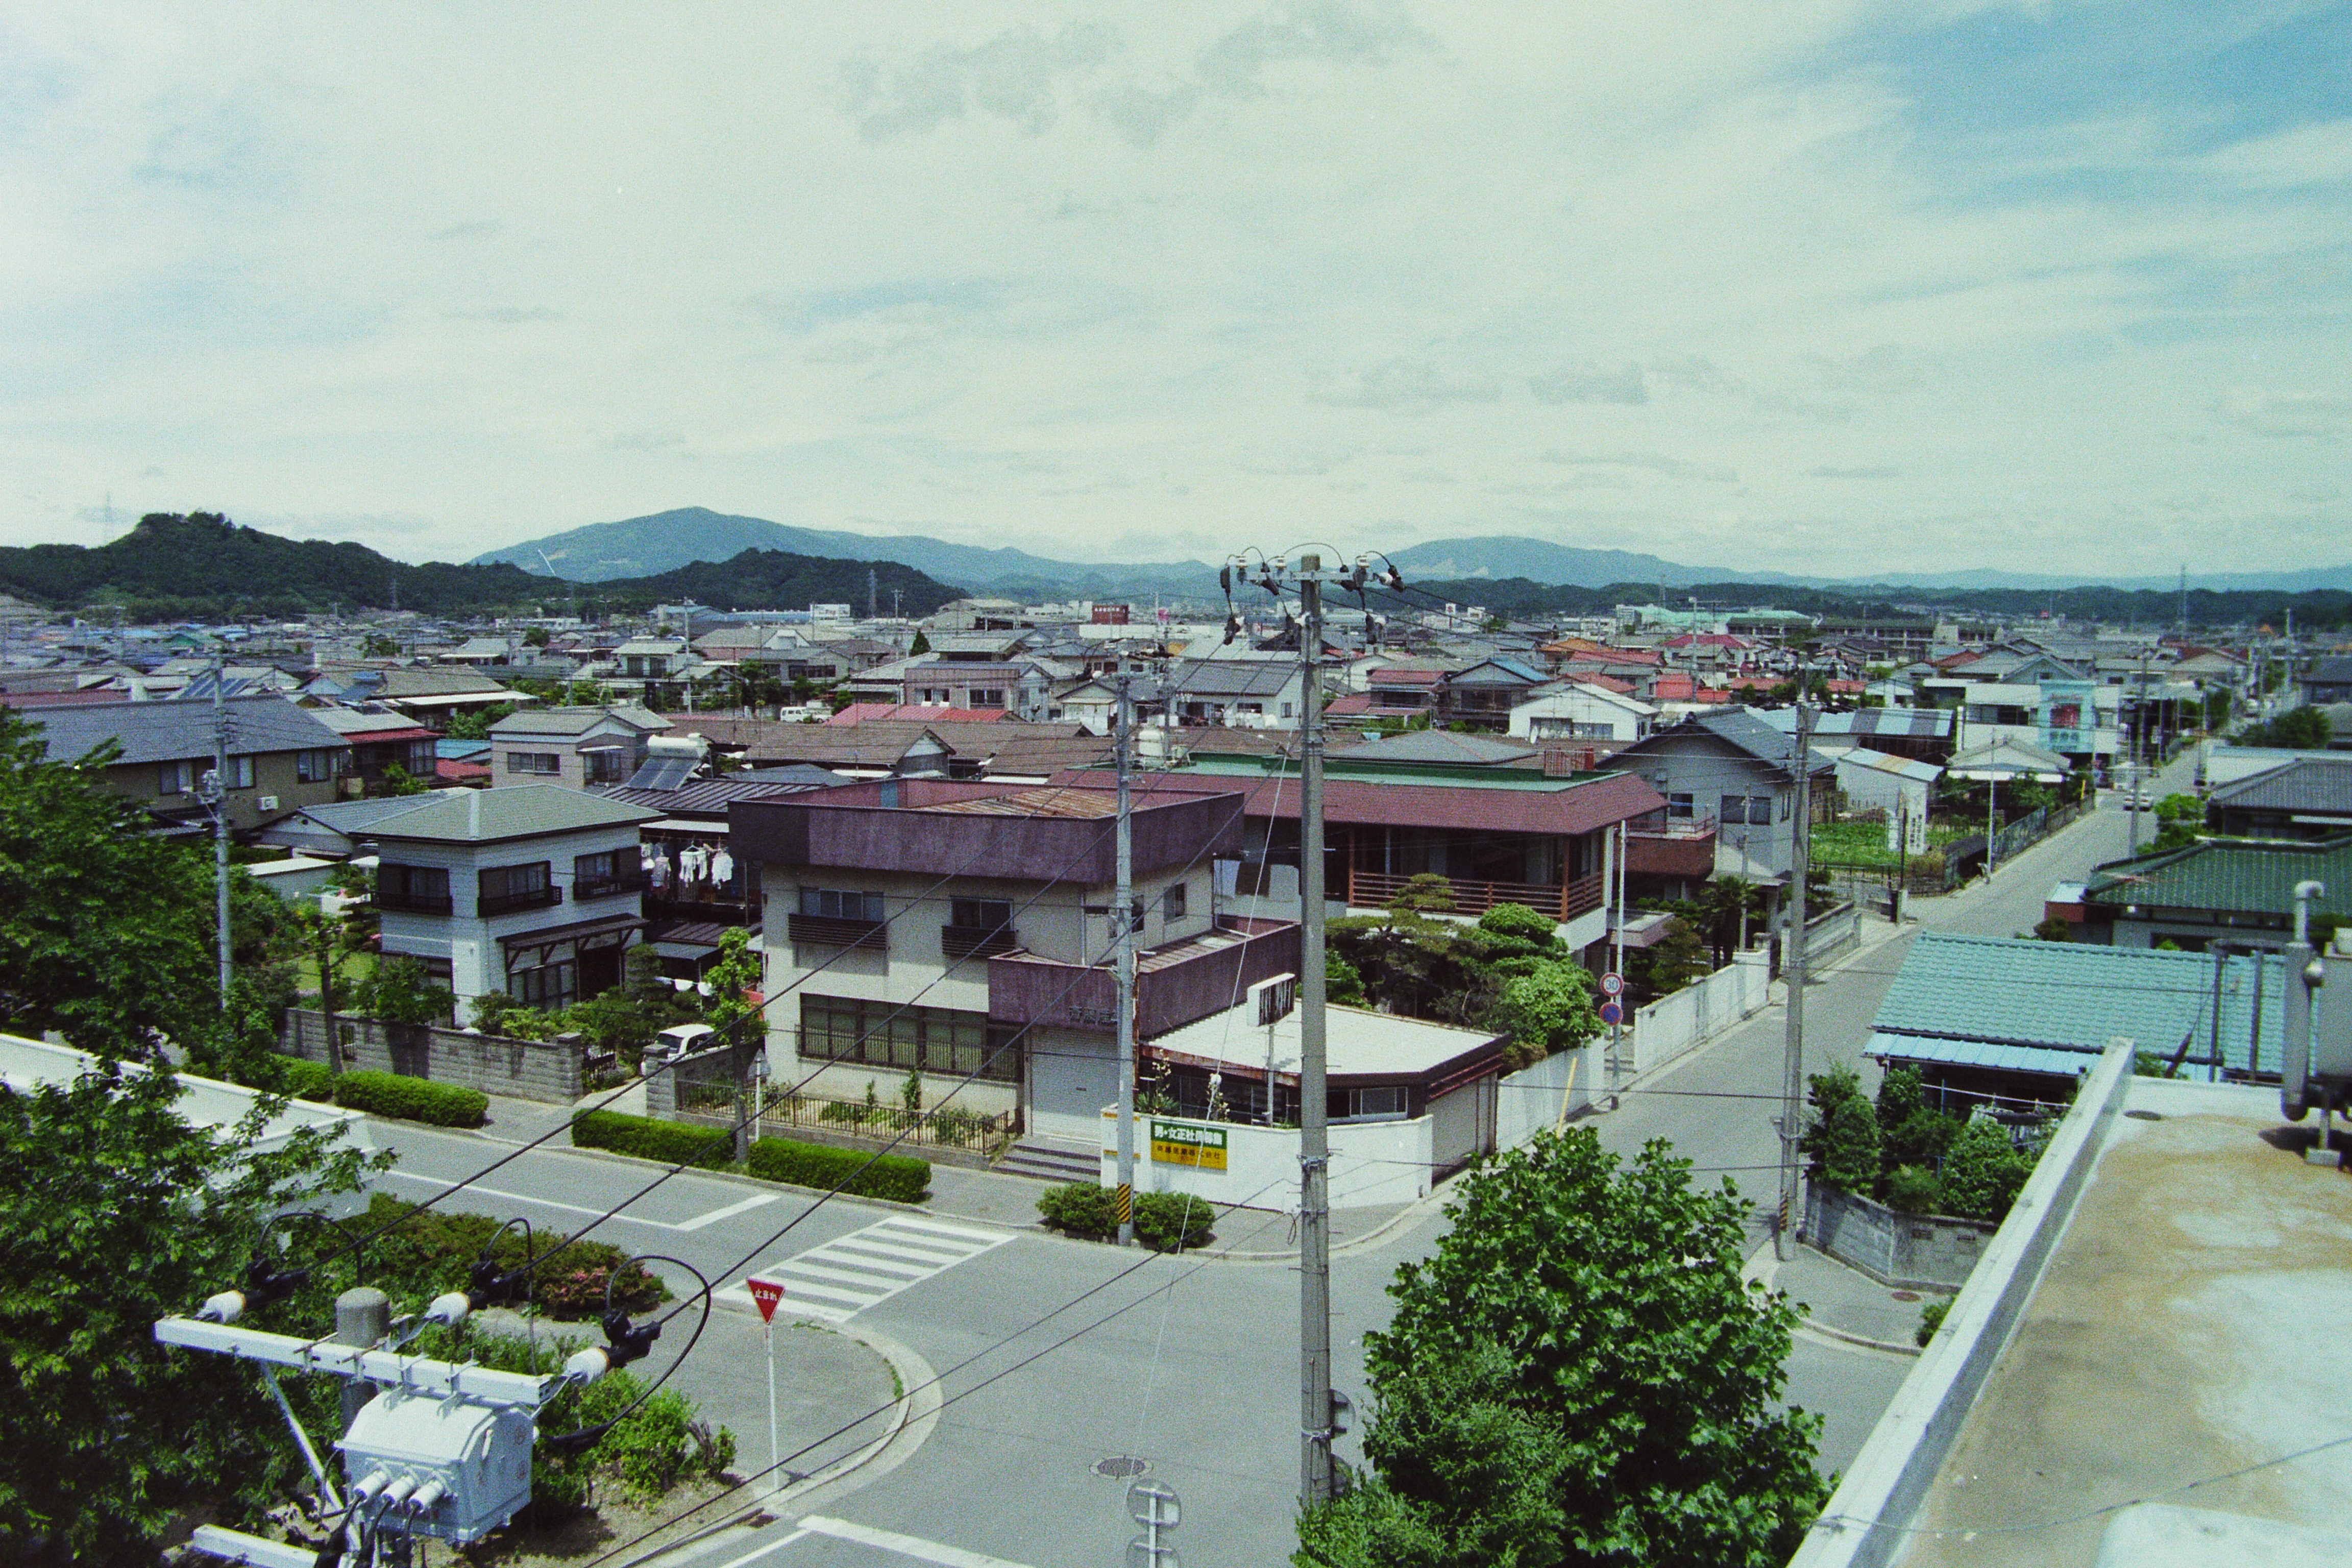 小名浜市民会館屋上から北西を望む〔平成8(1996)年、いわき市撮影〕